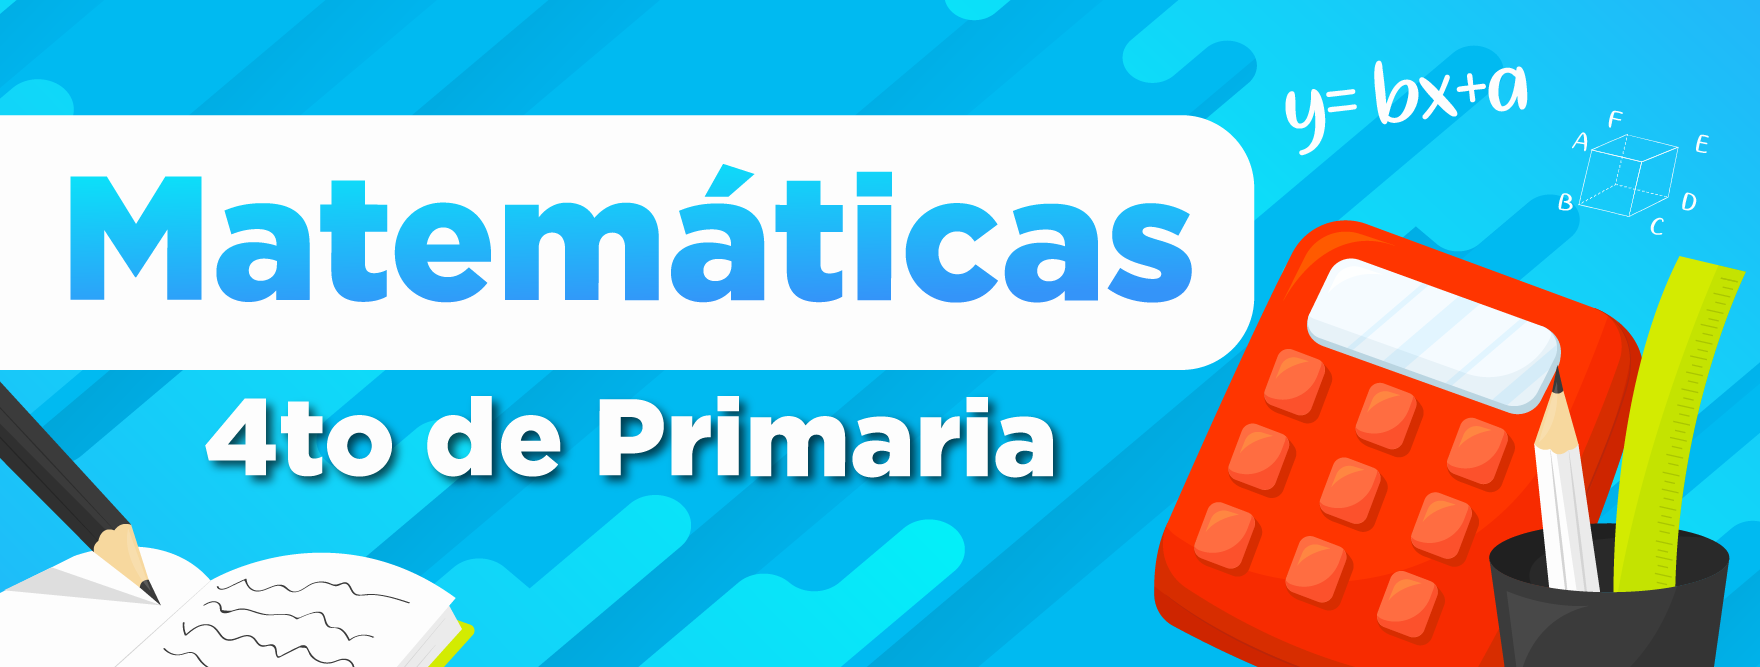 Matemáticas - 4to Primaria Mat4toP